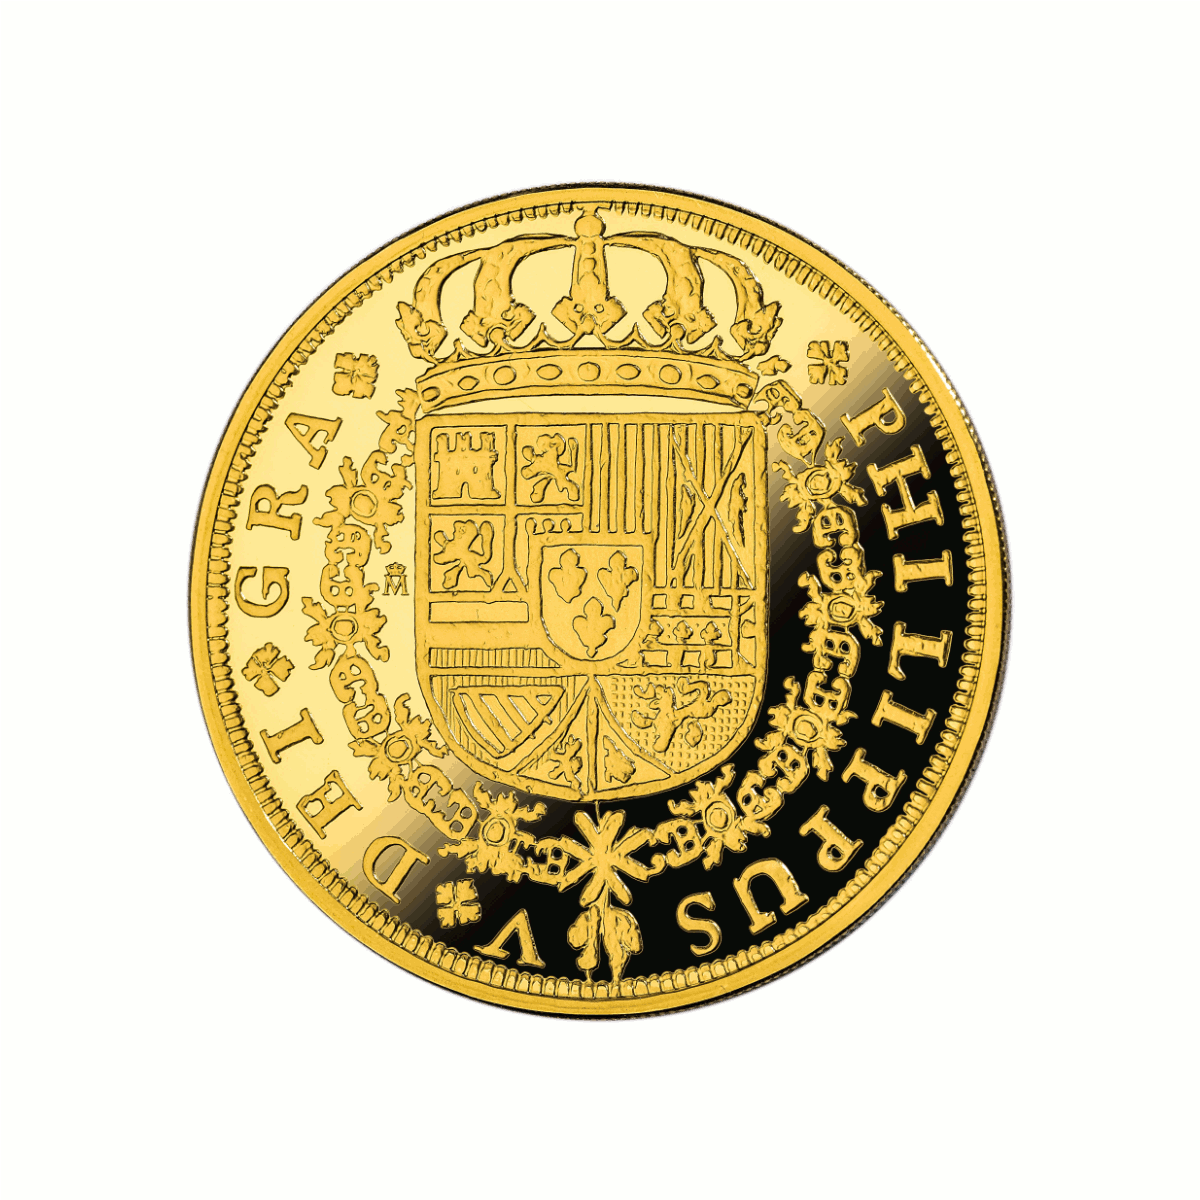 Adversen av 8 escudo-minnemynten (400 Euro) med våpenskjoldet til Spania under Felipe V